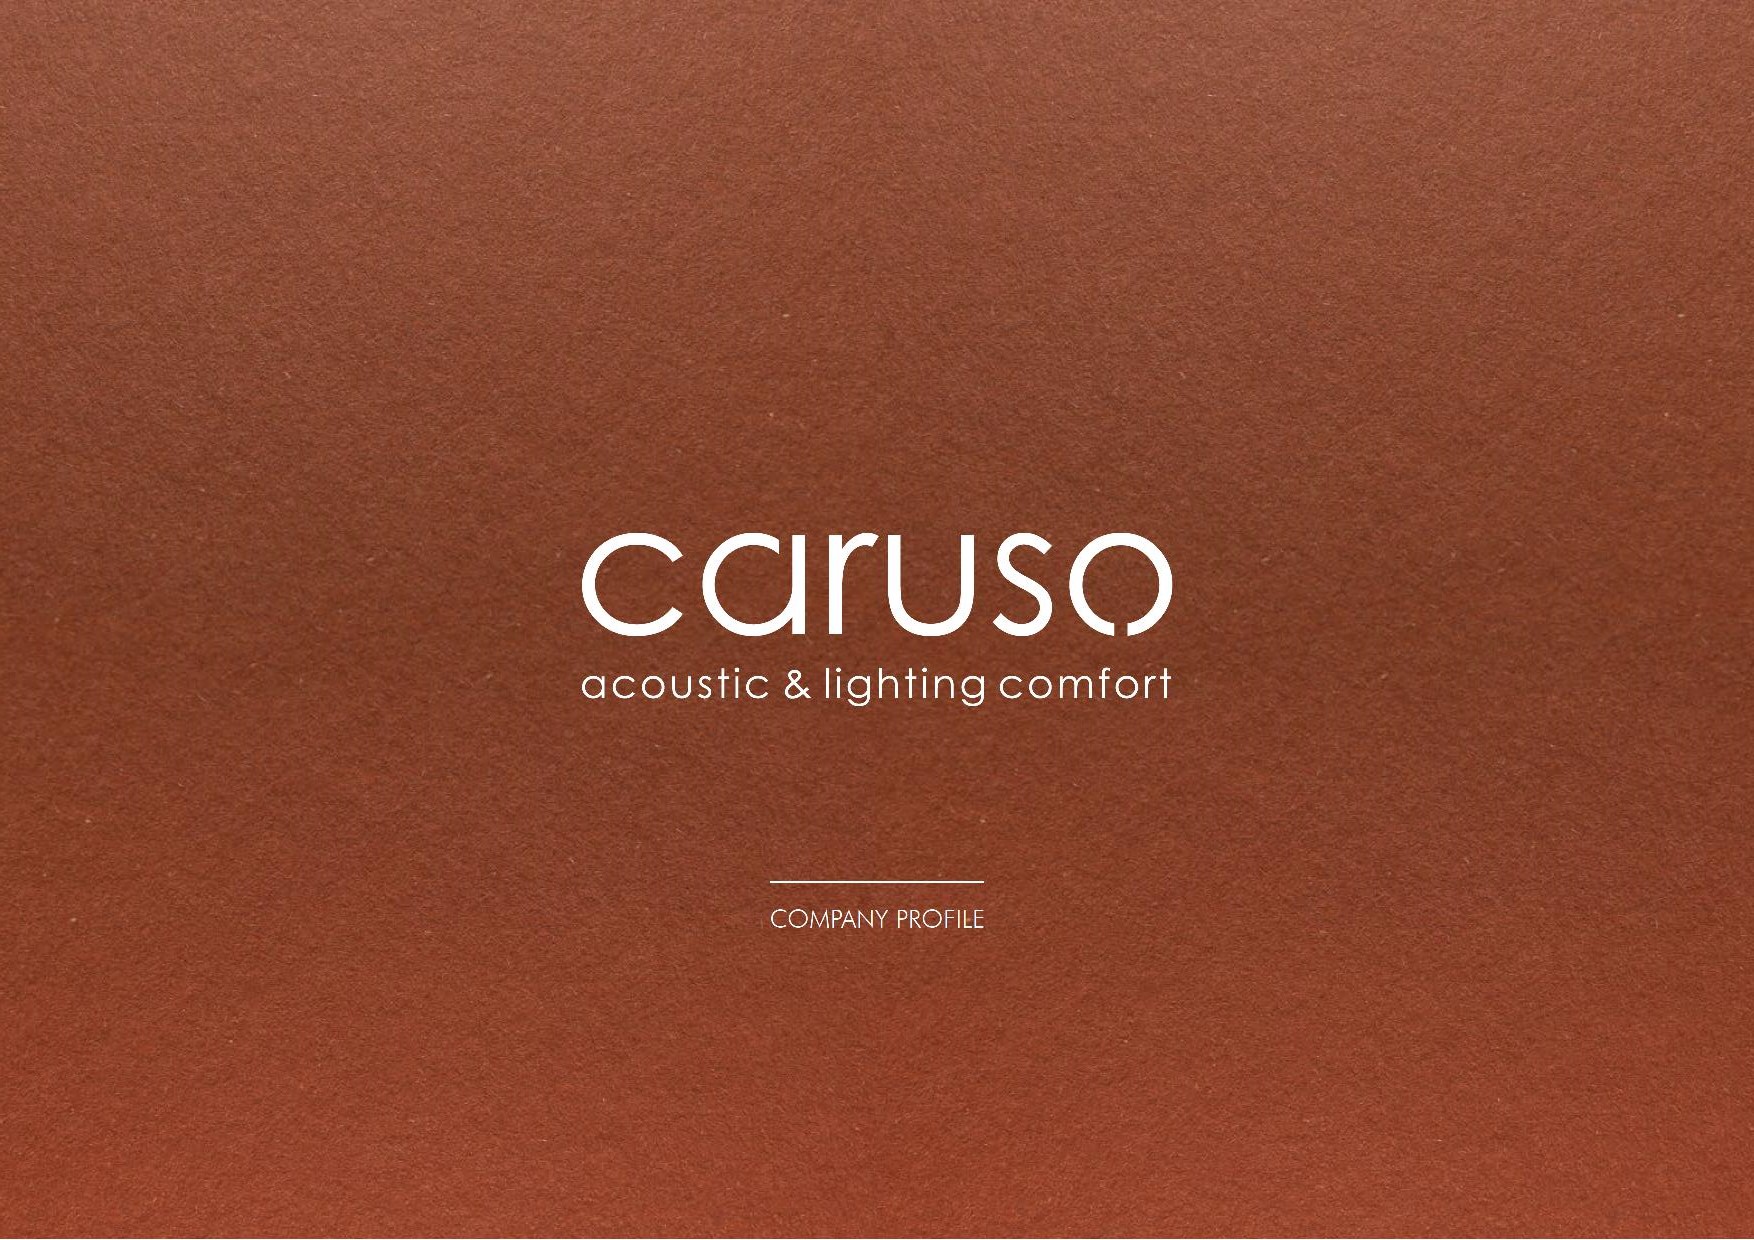 Caruso catalogue 2019